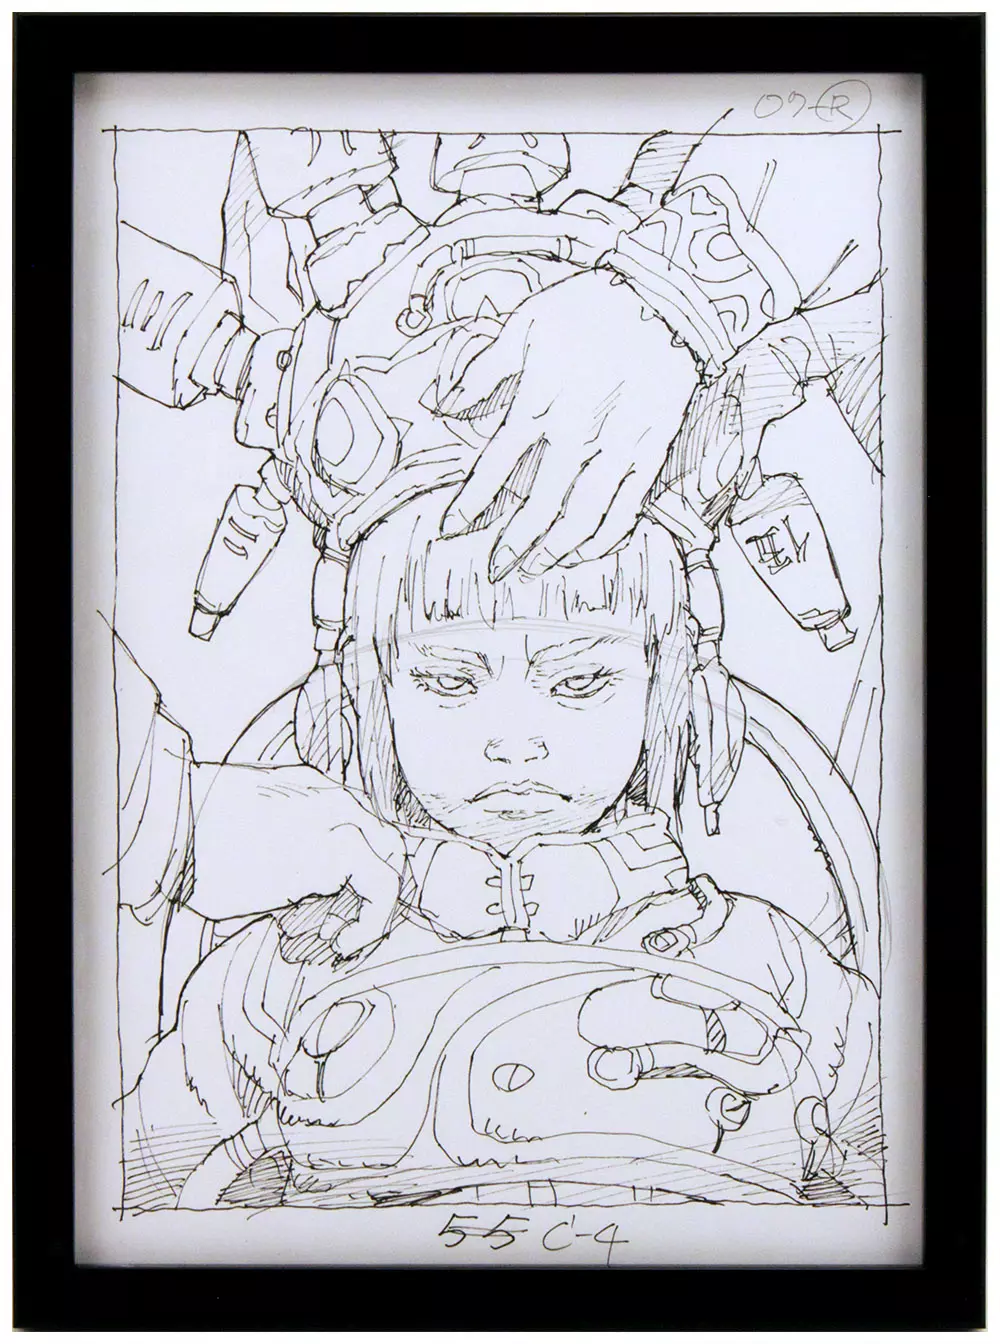 「面倒くさい」(Troublesome) - Ink Sketch, Tatsuyuki Tanaka